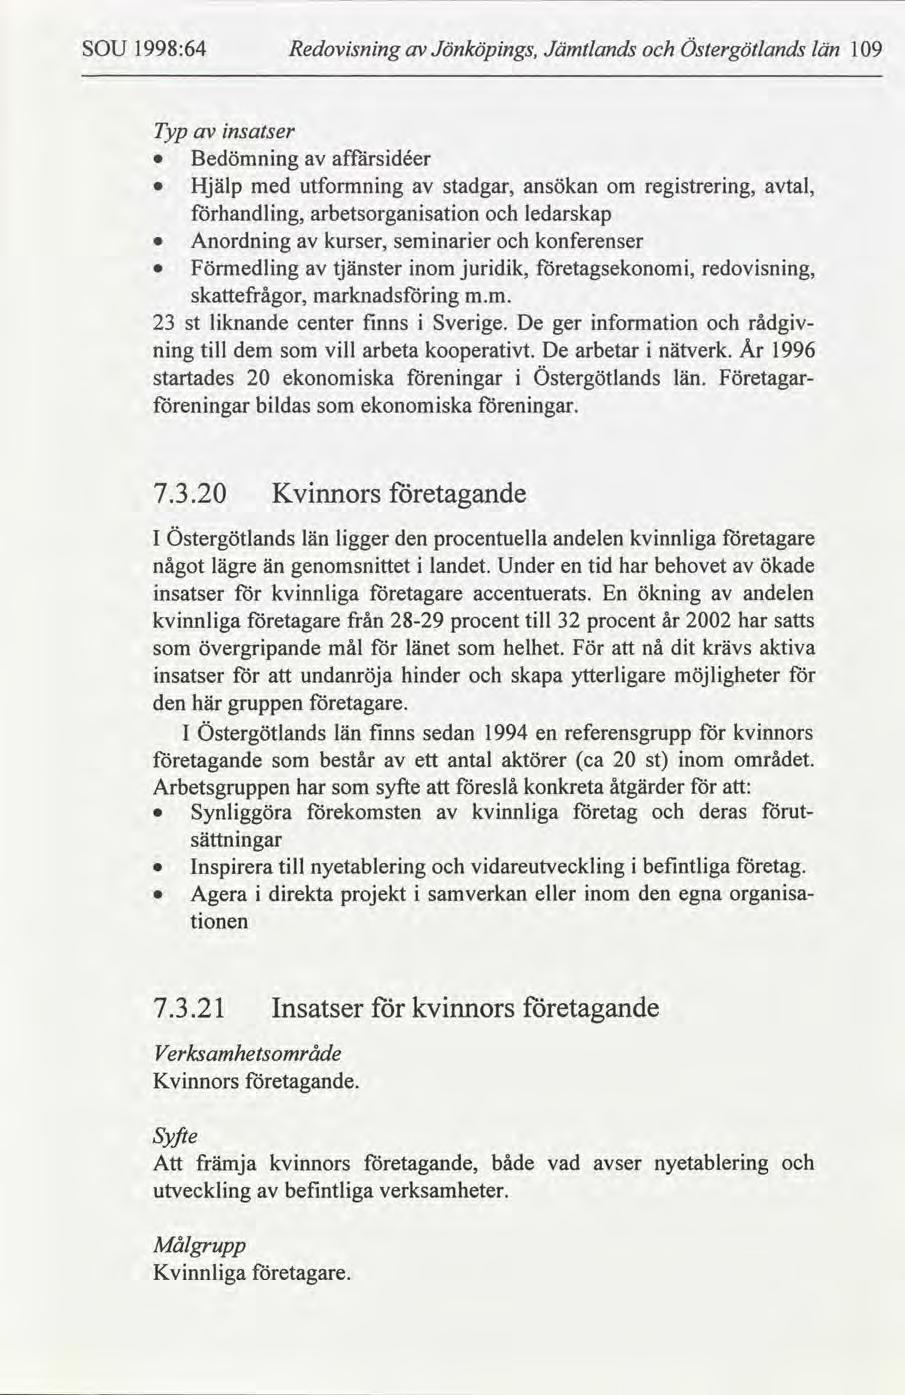 SOU 1998:64 Redovsnng Jönköpngs, Jämtlands Östergötlands län 19 Typ nsatser Bedömnng affärsdéer Hjälp med utformnng stadgar, ansökan om regstrerng, tal, handlng, arbetsorgansaton ledarskap Anordnng